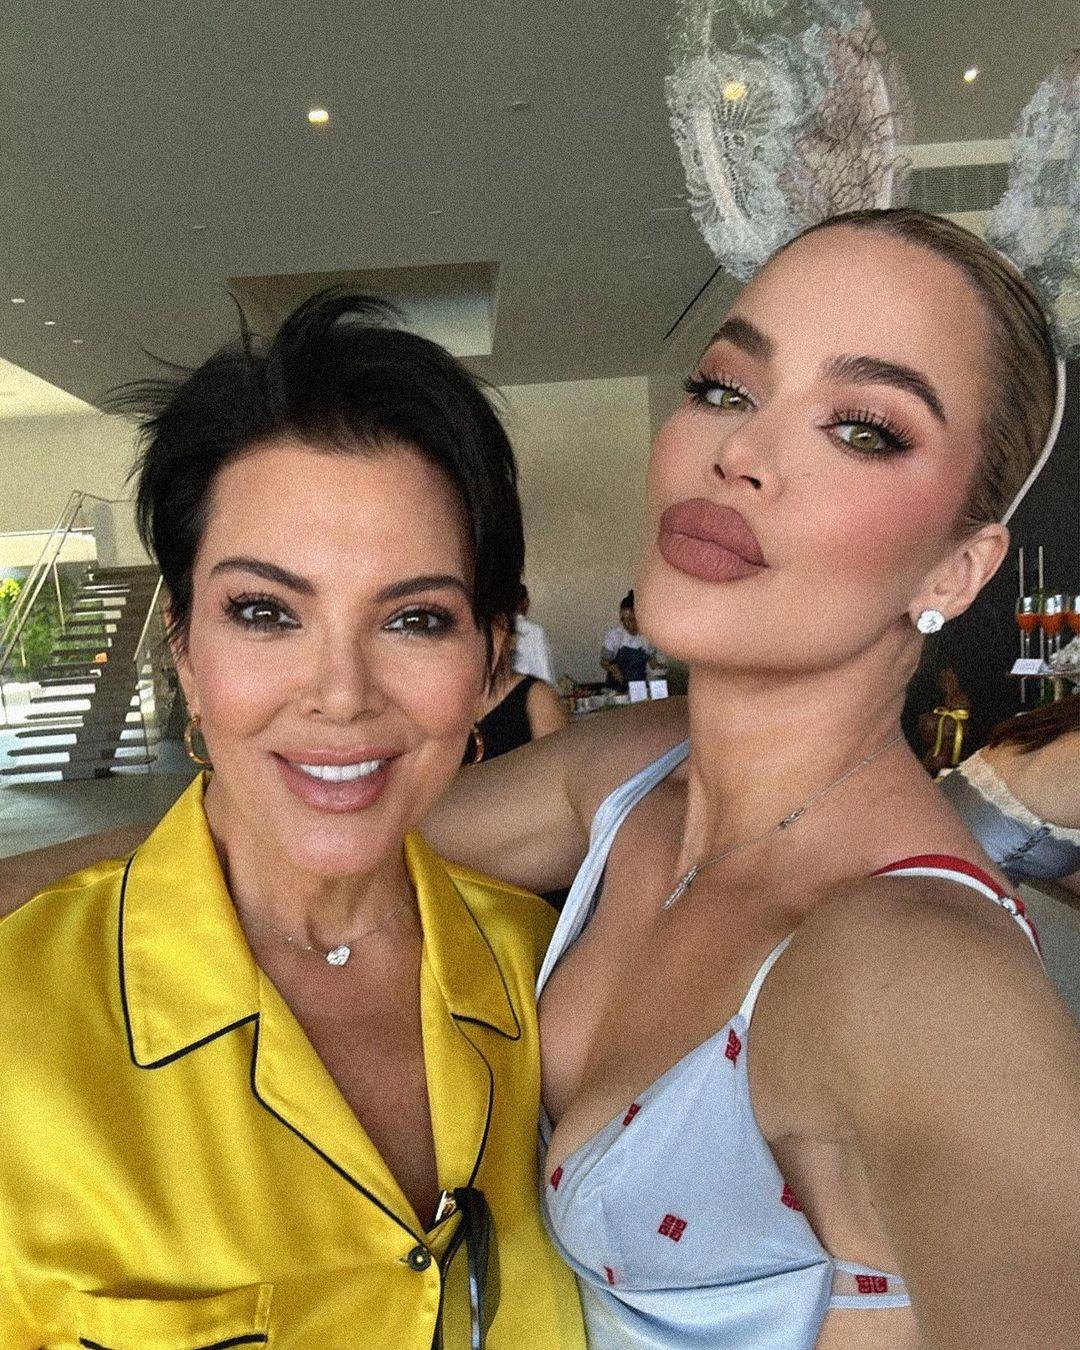 Kris Jenner and Khloe Kardashian face plastic surgery rumors